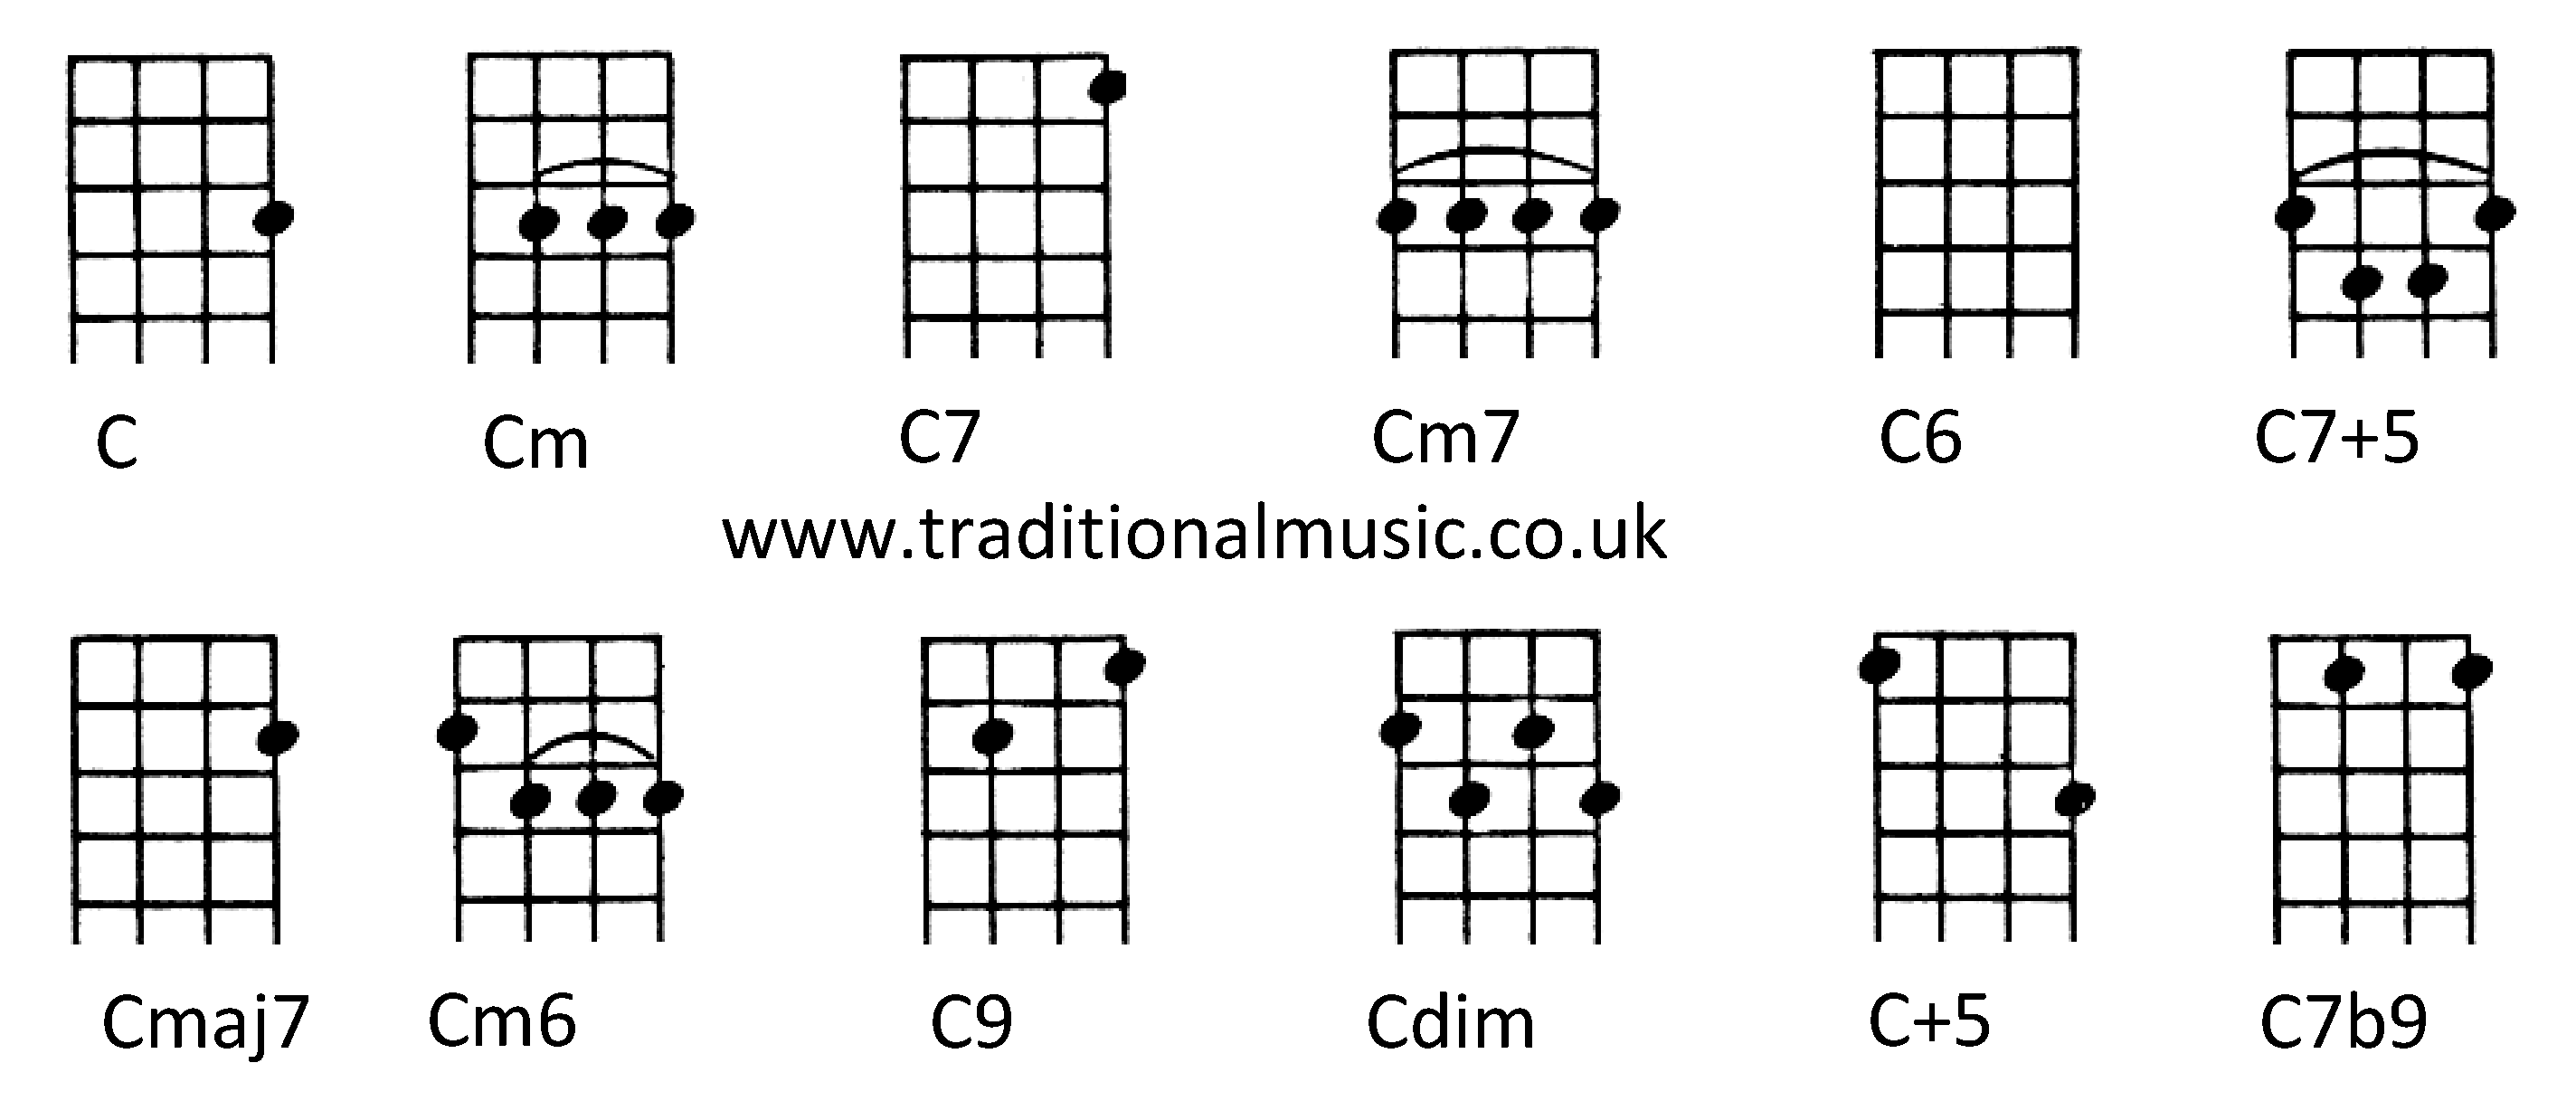 Chords for Ukulele (Chords for Ukulele (C tuning)C Cm C7 Cm7 C6 C7+5 Cmaj7 Cm6 C9 Cdim C+5 C7b9